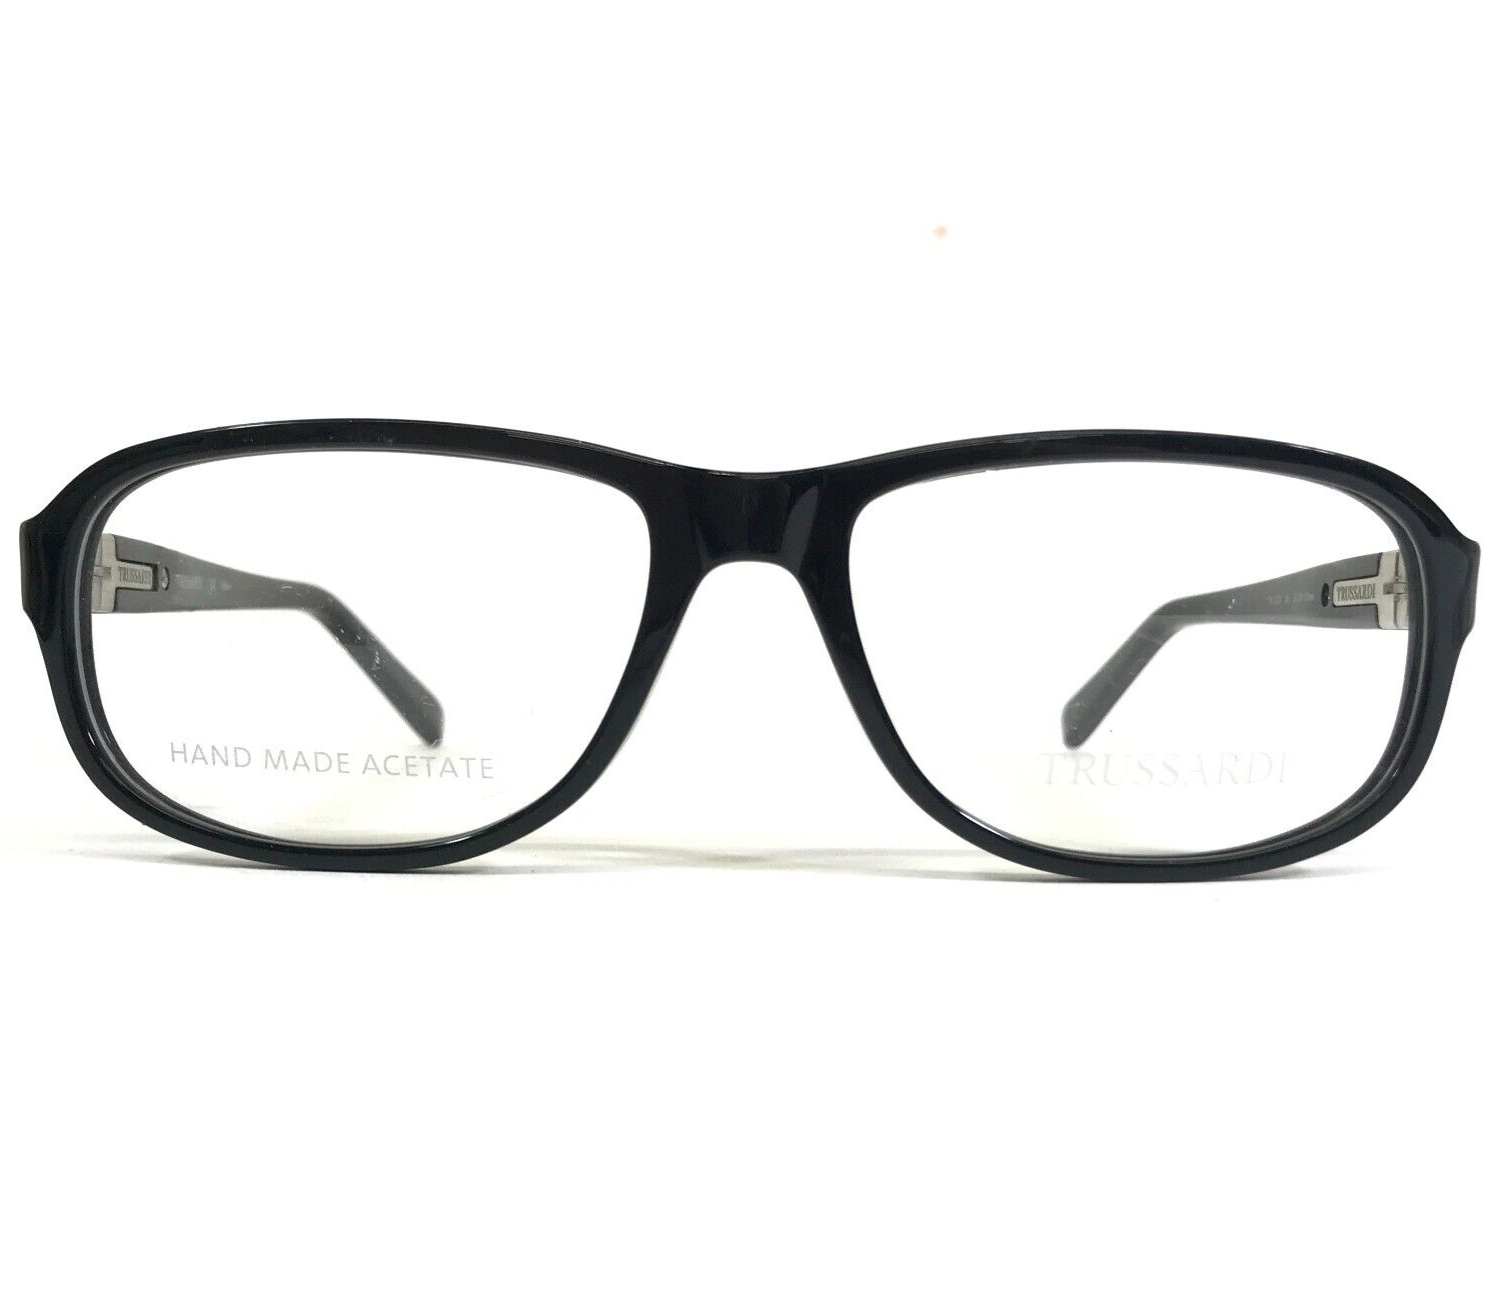 Primary image for Trussardi Eyeglasses Frames TR 12737 BK Black Square Full Rim 55-16-135